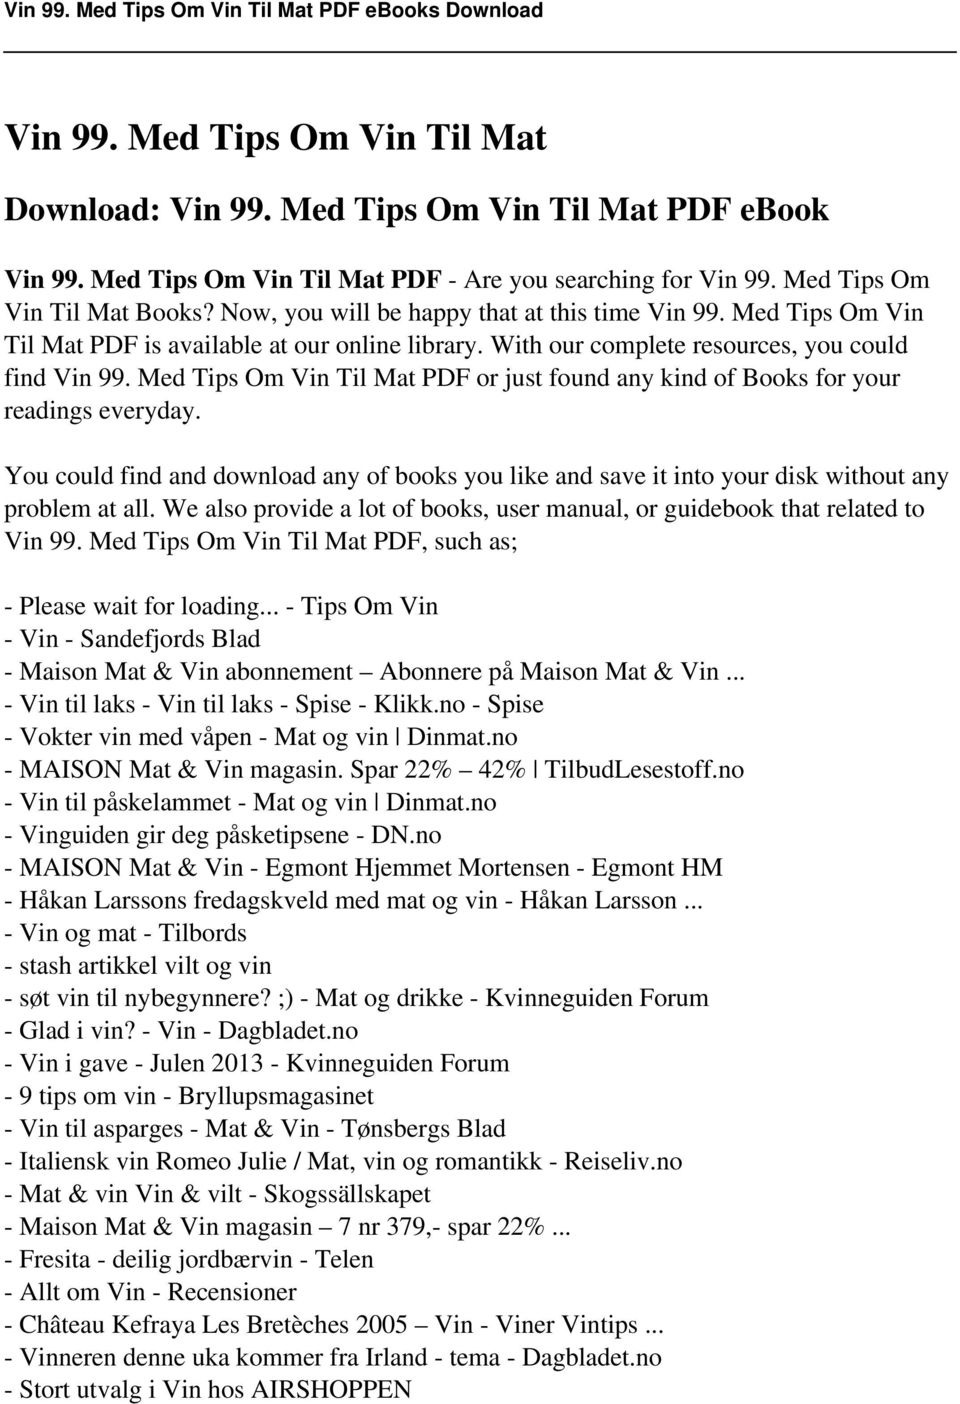 Vin 99. Med Tips Om Vin Til Mat - PDF Gratis nedlasting